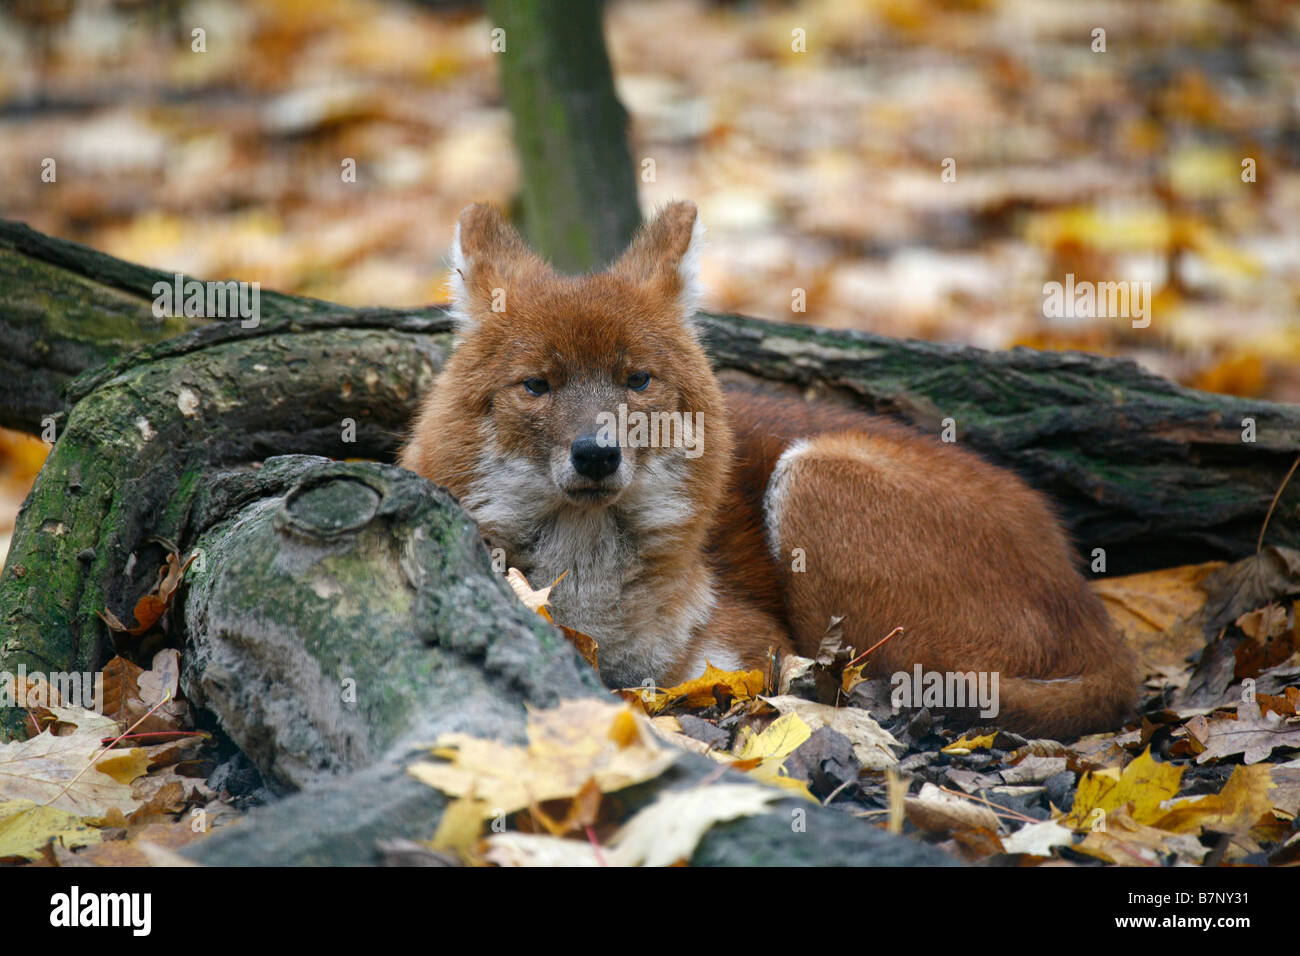 Dhole, Red Dog, Asiatic Wild Dog (Cuon alpinus) lying among autumn leaves Stock Photo